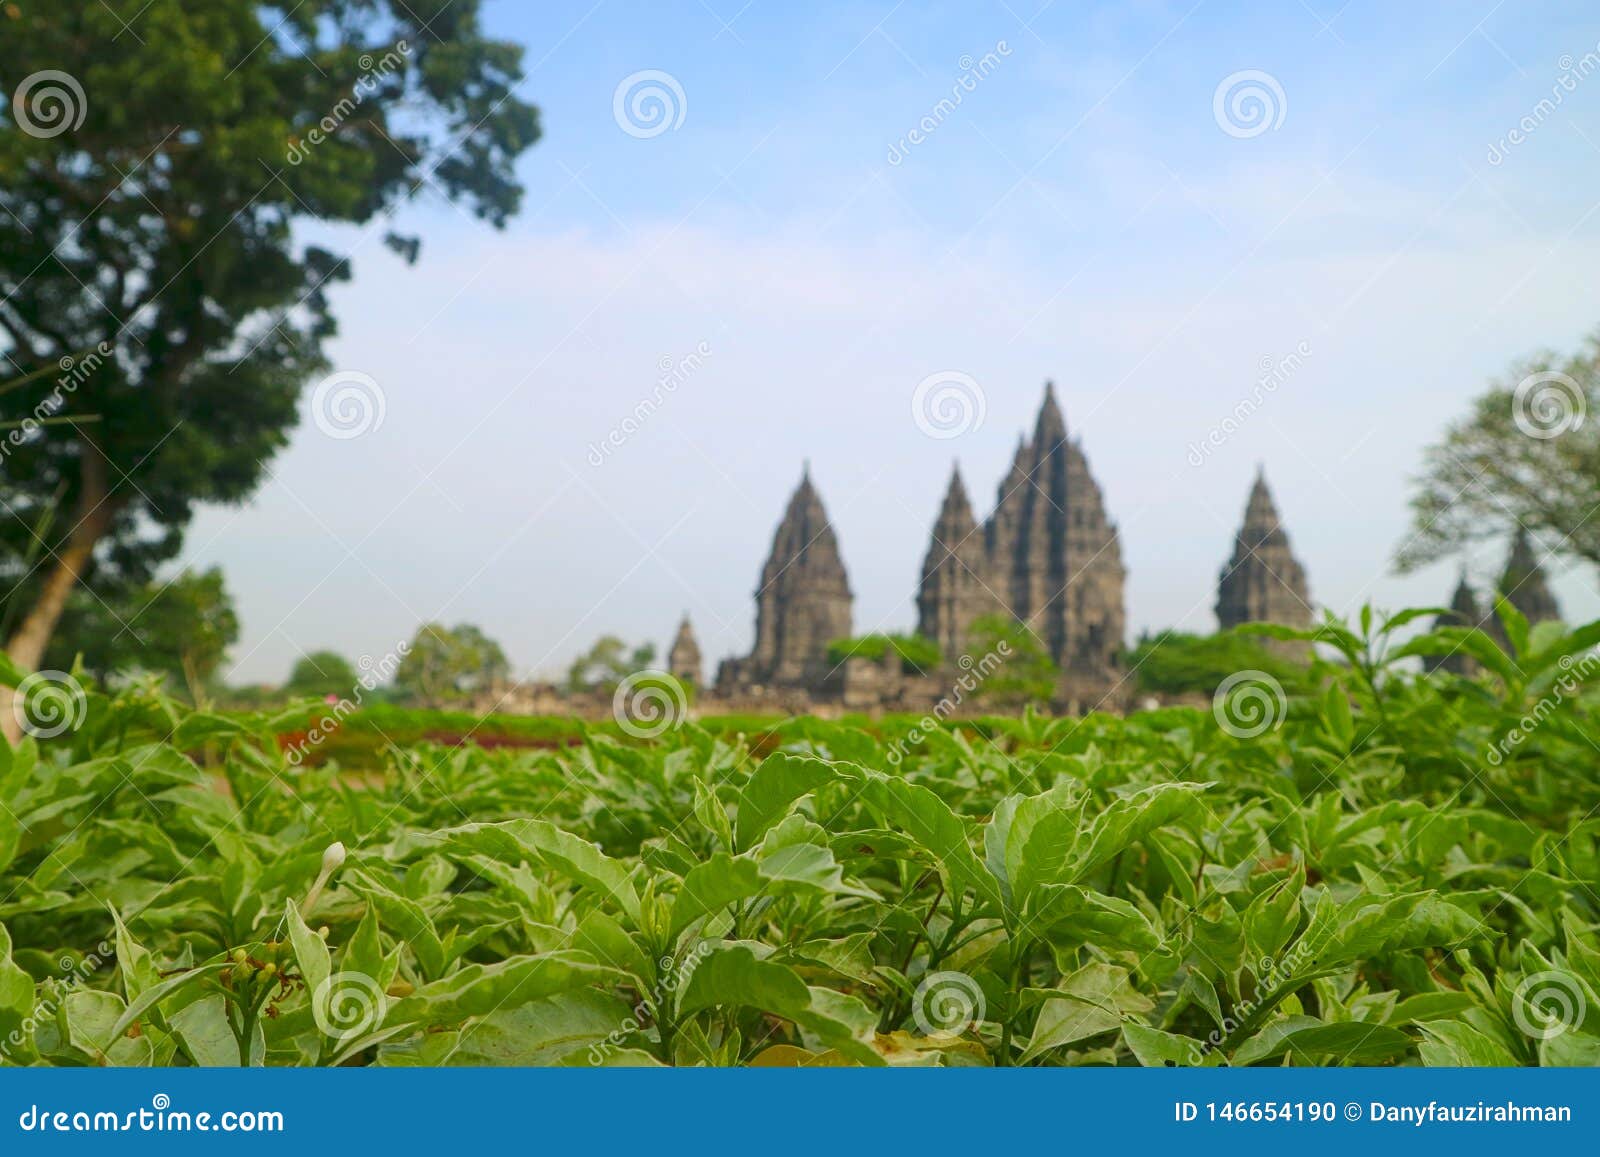 Prambanan Hindu Temple, Bokoharjo, Sleman Regency, Special